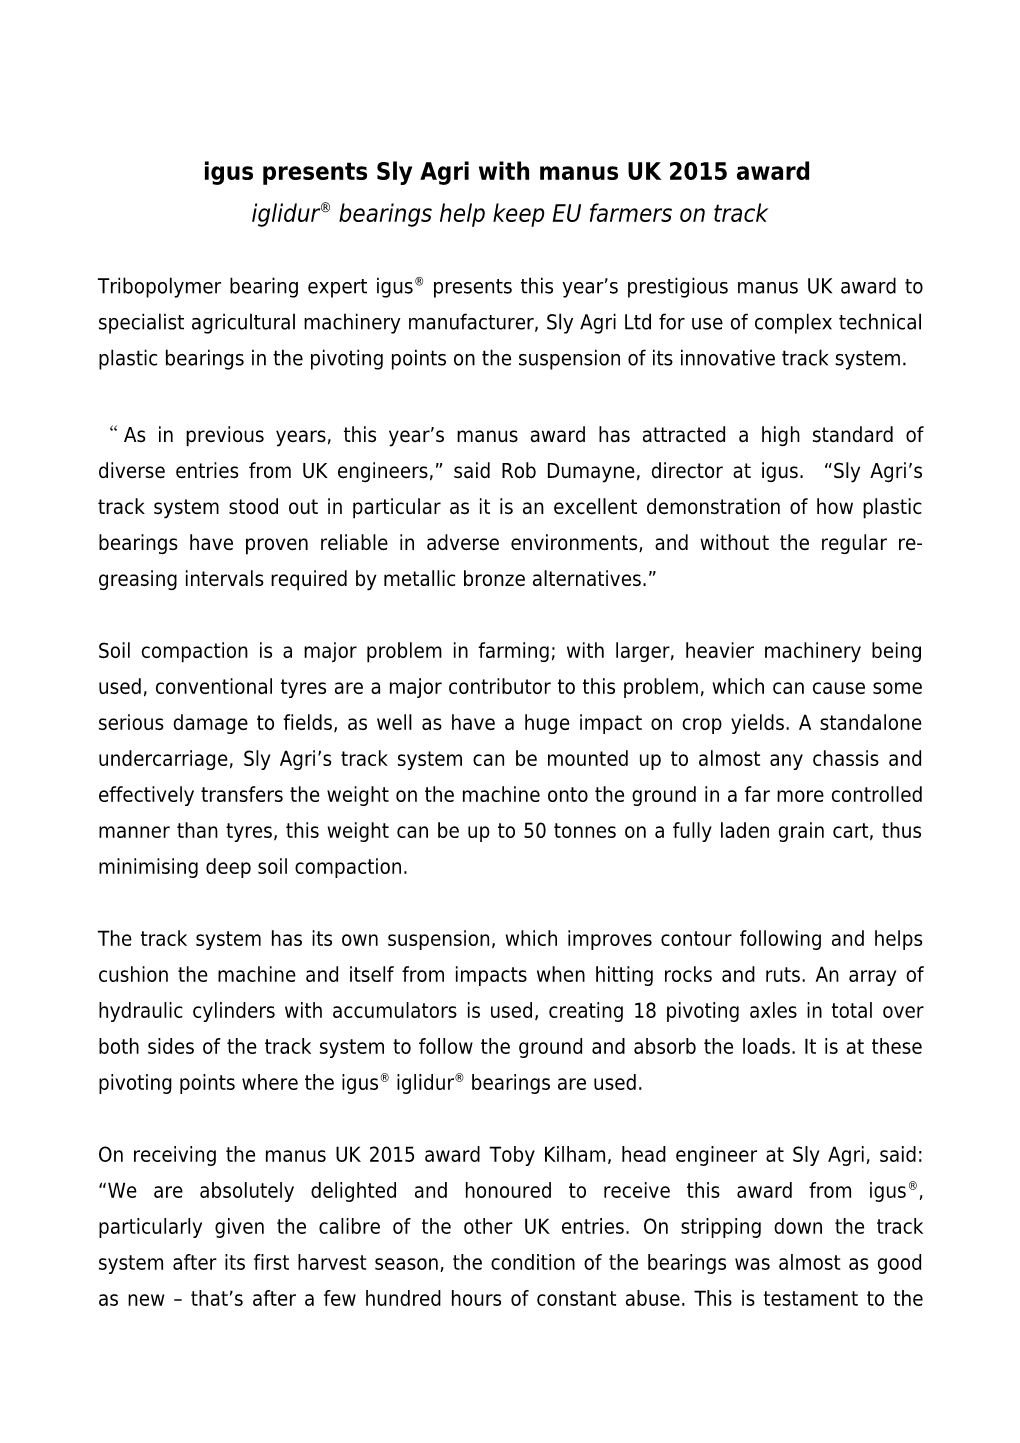 Igus Presents Sly Agri with Manus UK 2015 Award